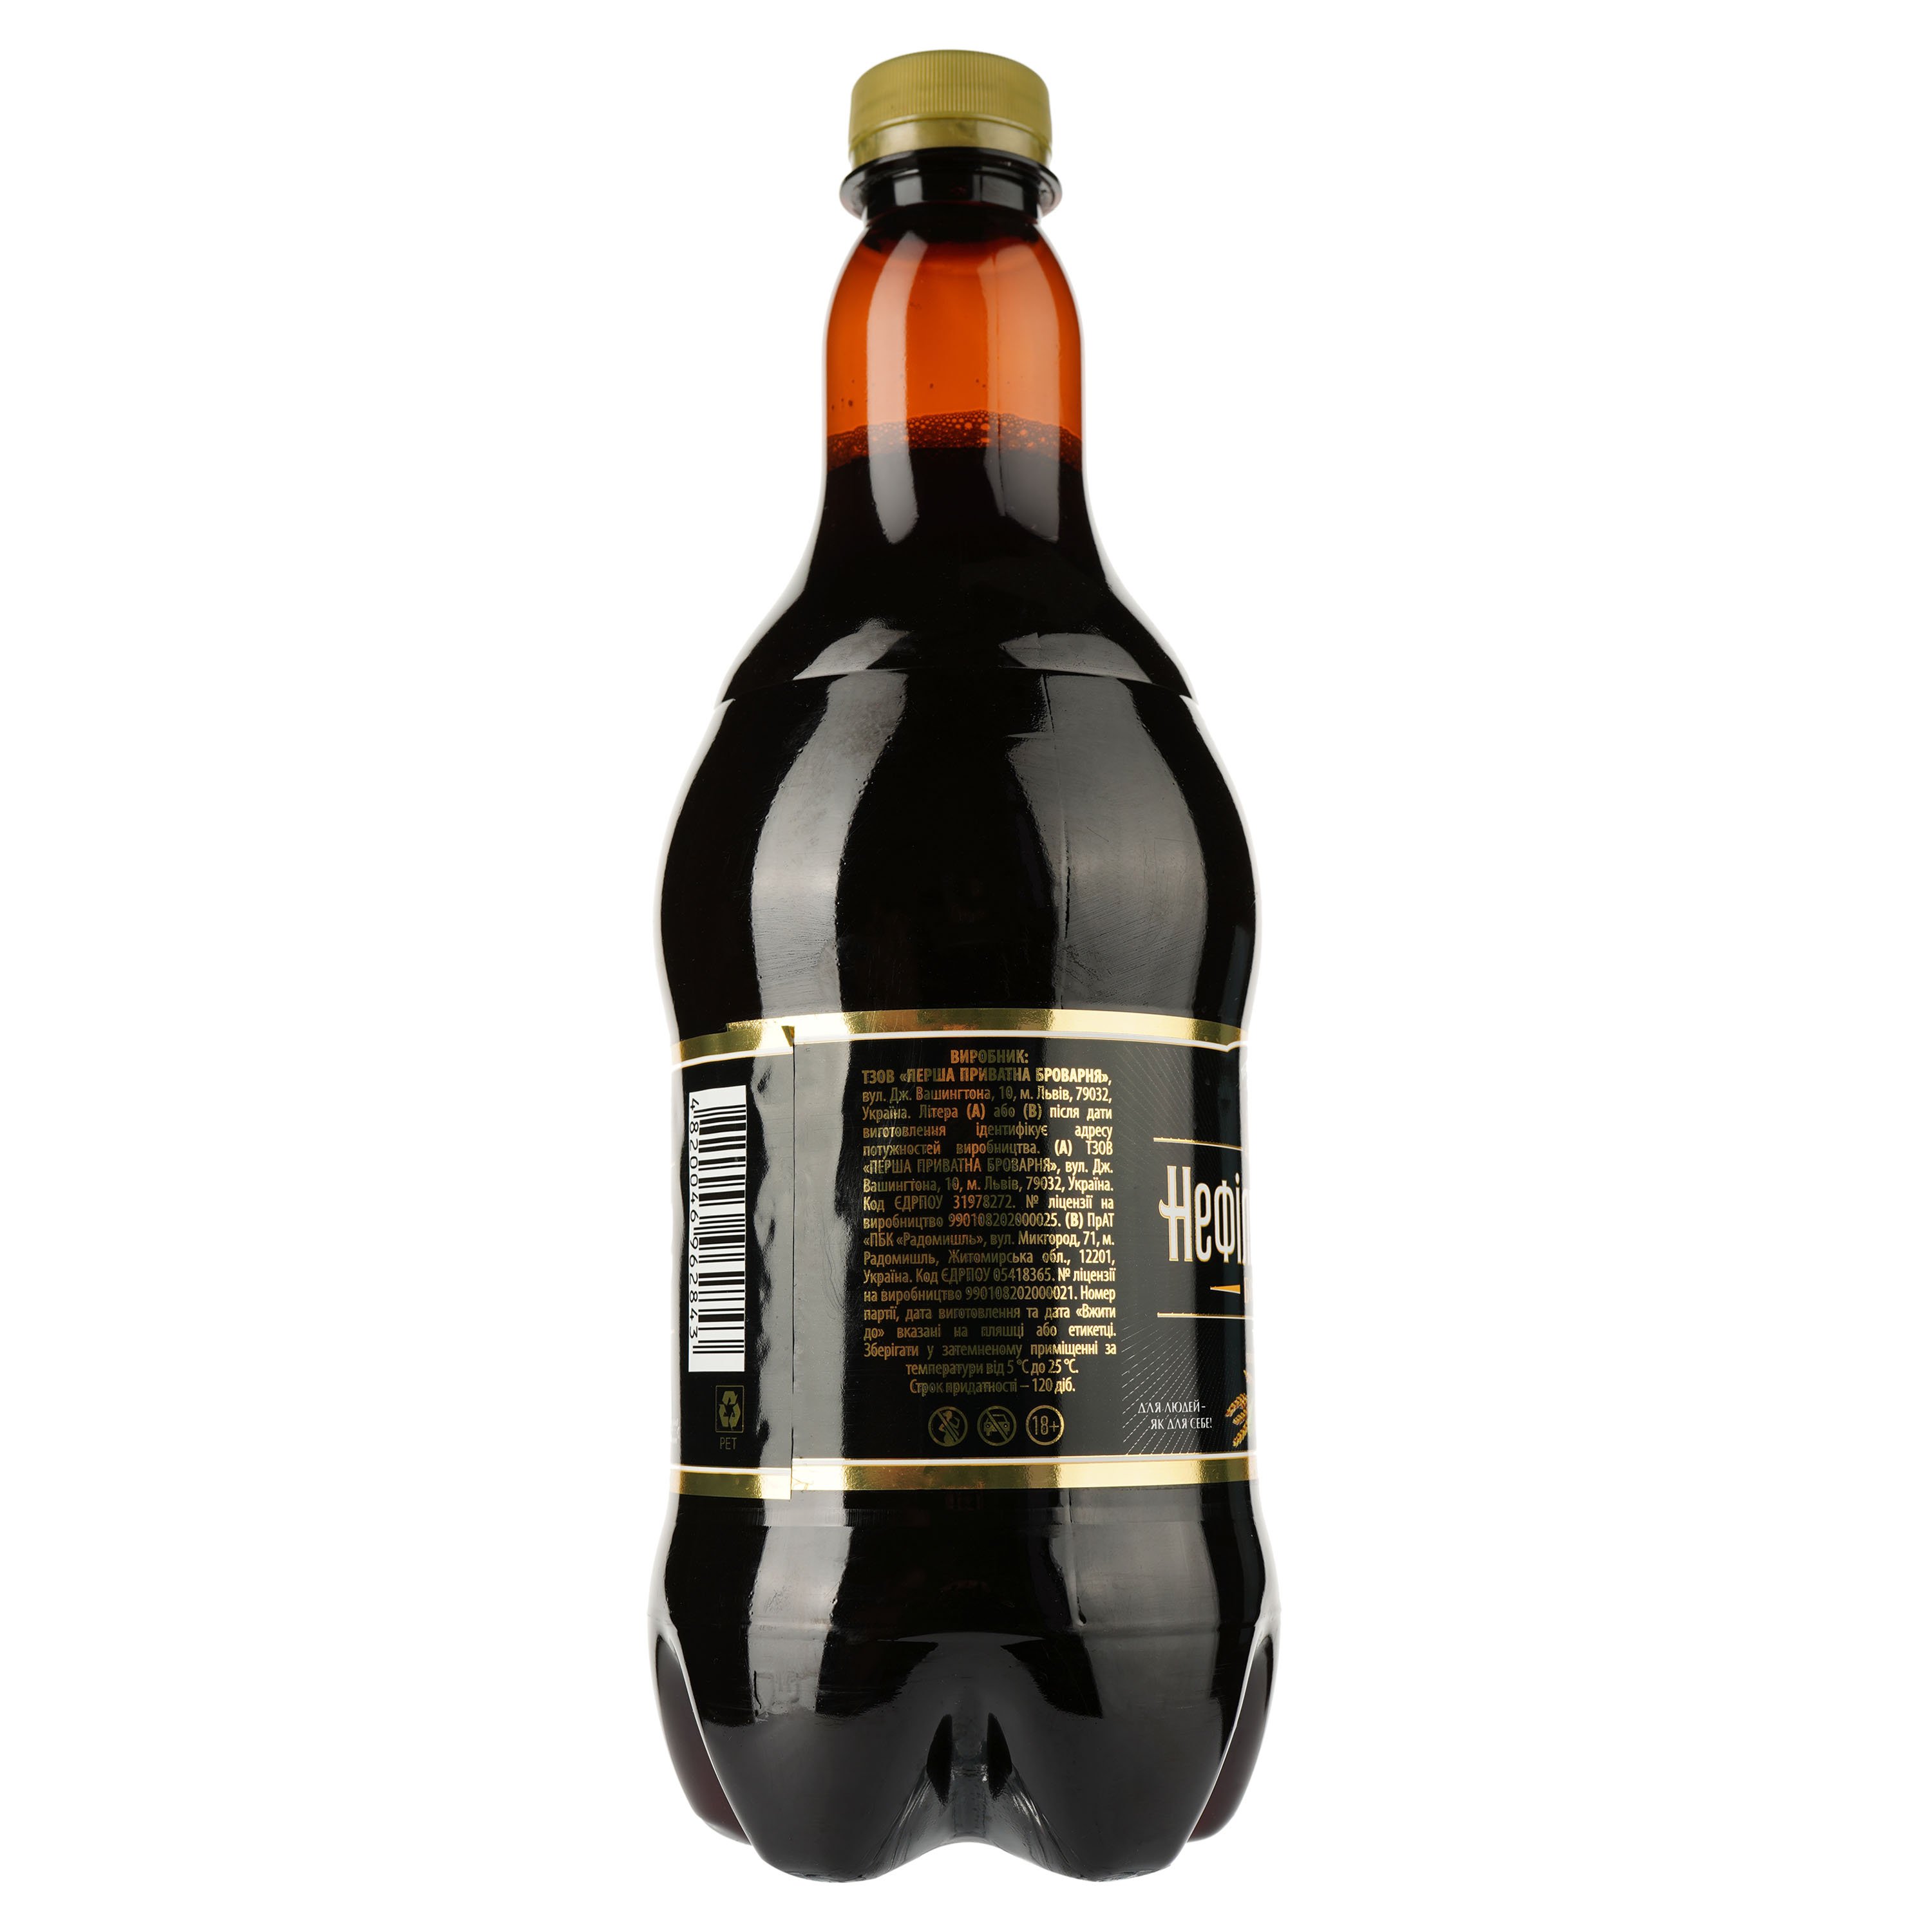 Пиво Перша приватна броварня Бочковое, темное, нефильрованное, 4,8%, 0,9 л (770492) - фото 2